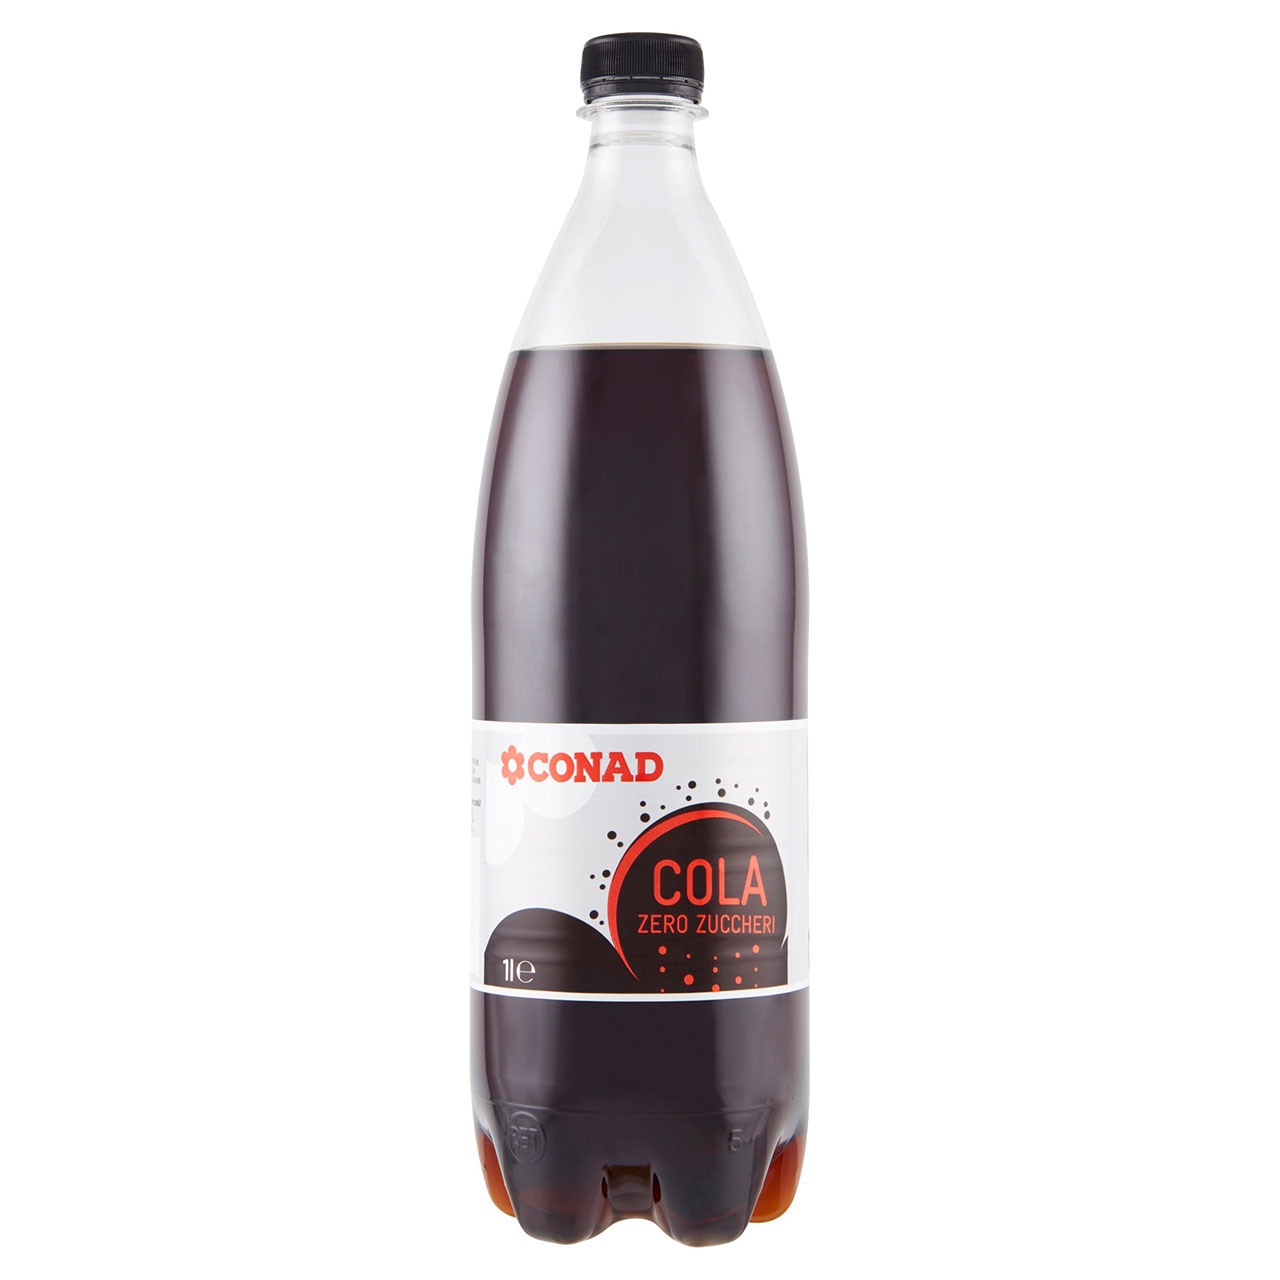 Cola Zero Zuccheri 1 l Conad in vendita online